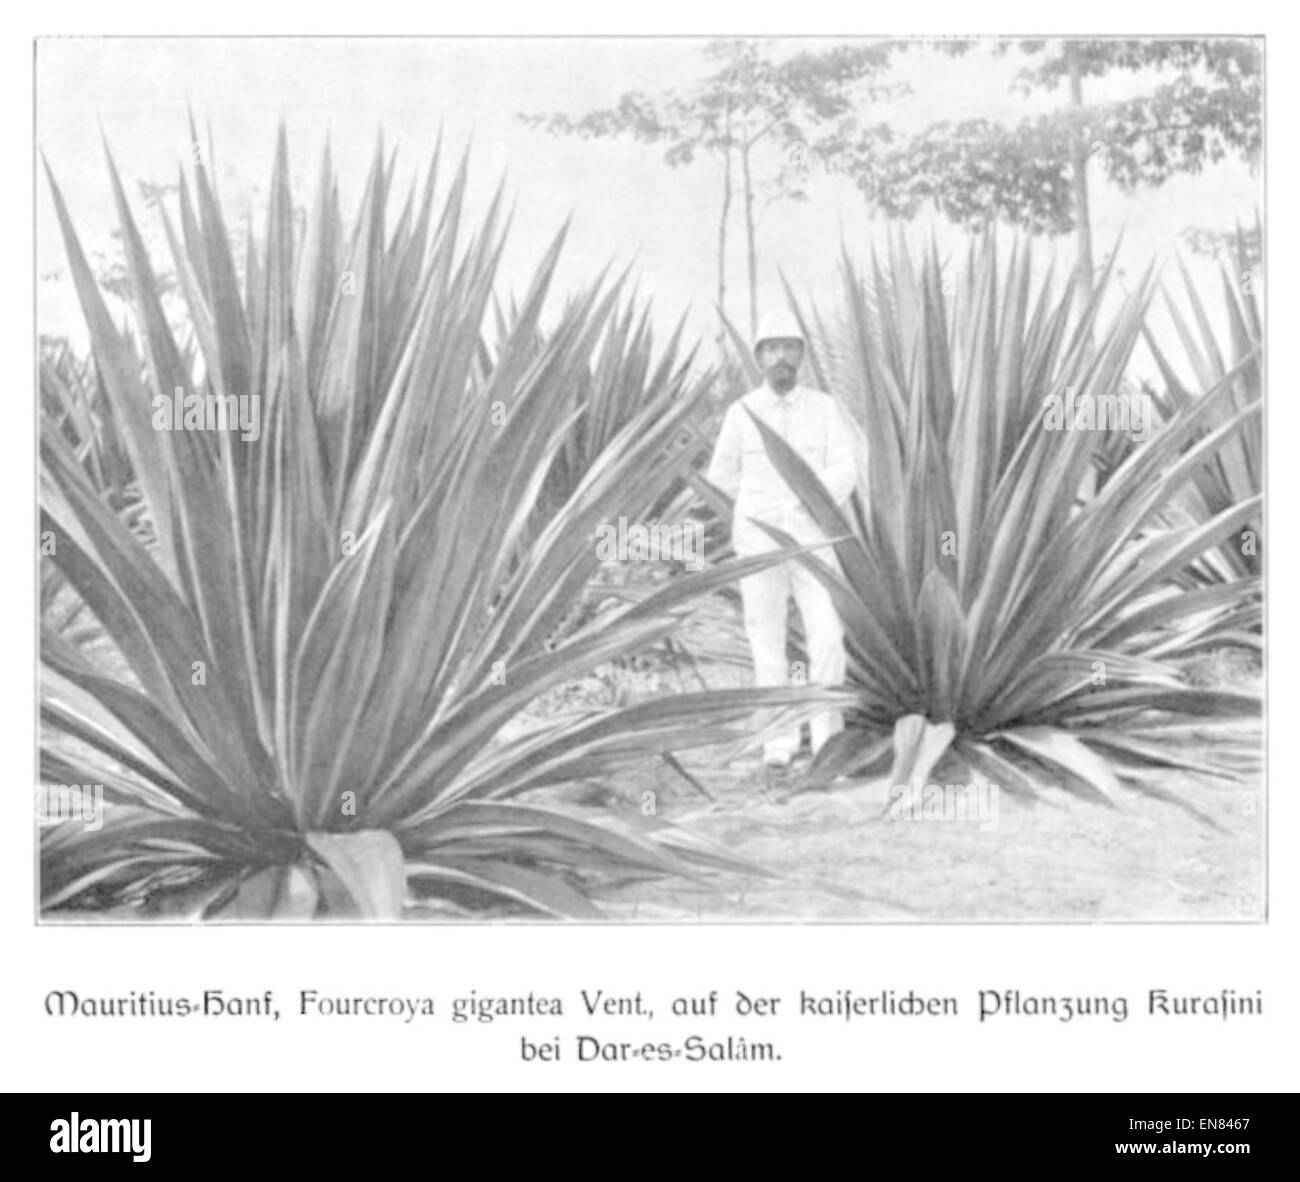 WOHLTMANN(1904) p088 Mauritius-Hanf auf der Kaiserlichen Pflanzung Kurasini bei Dar-es-Salam Stock Photo